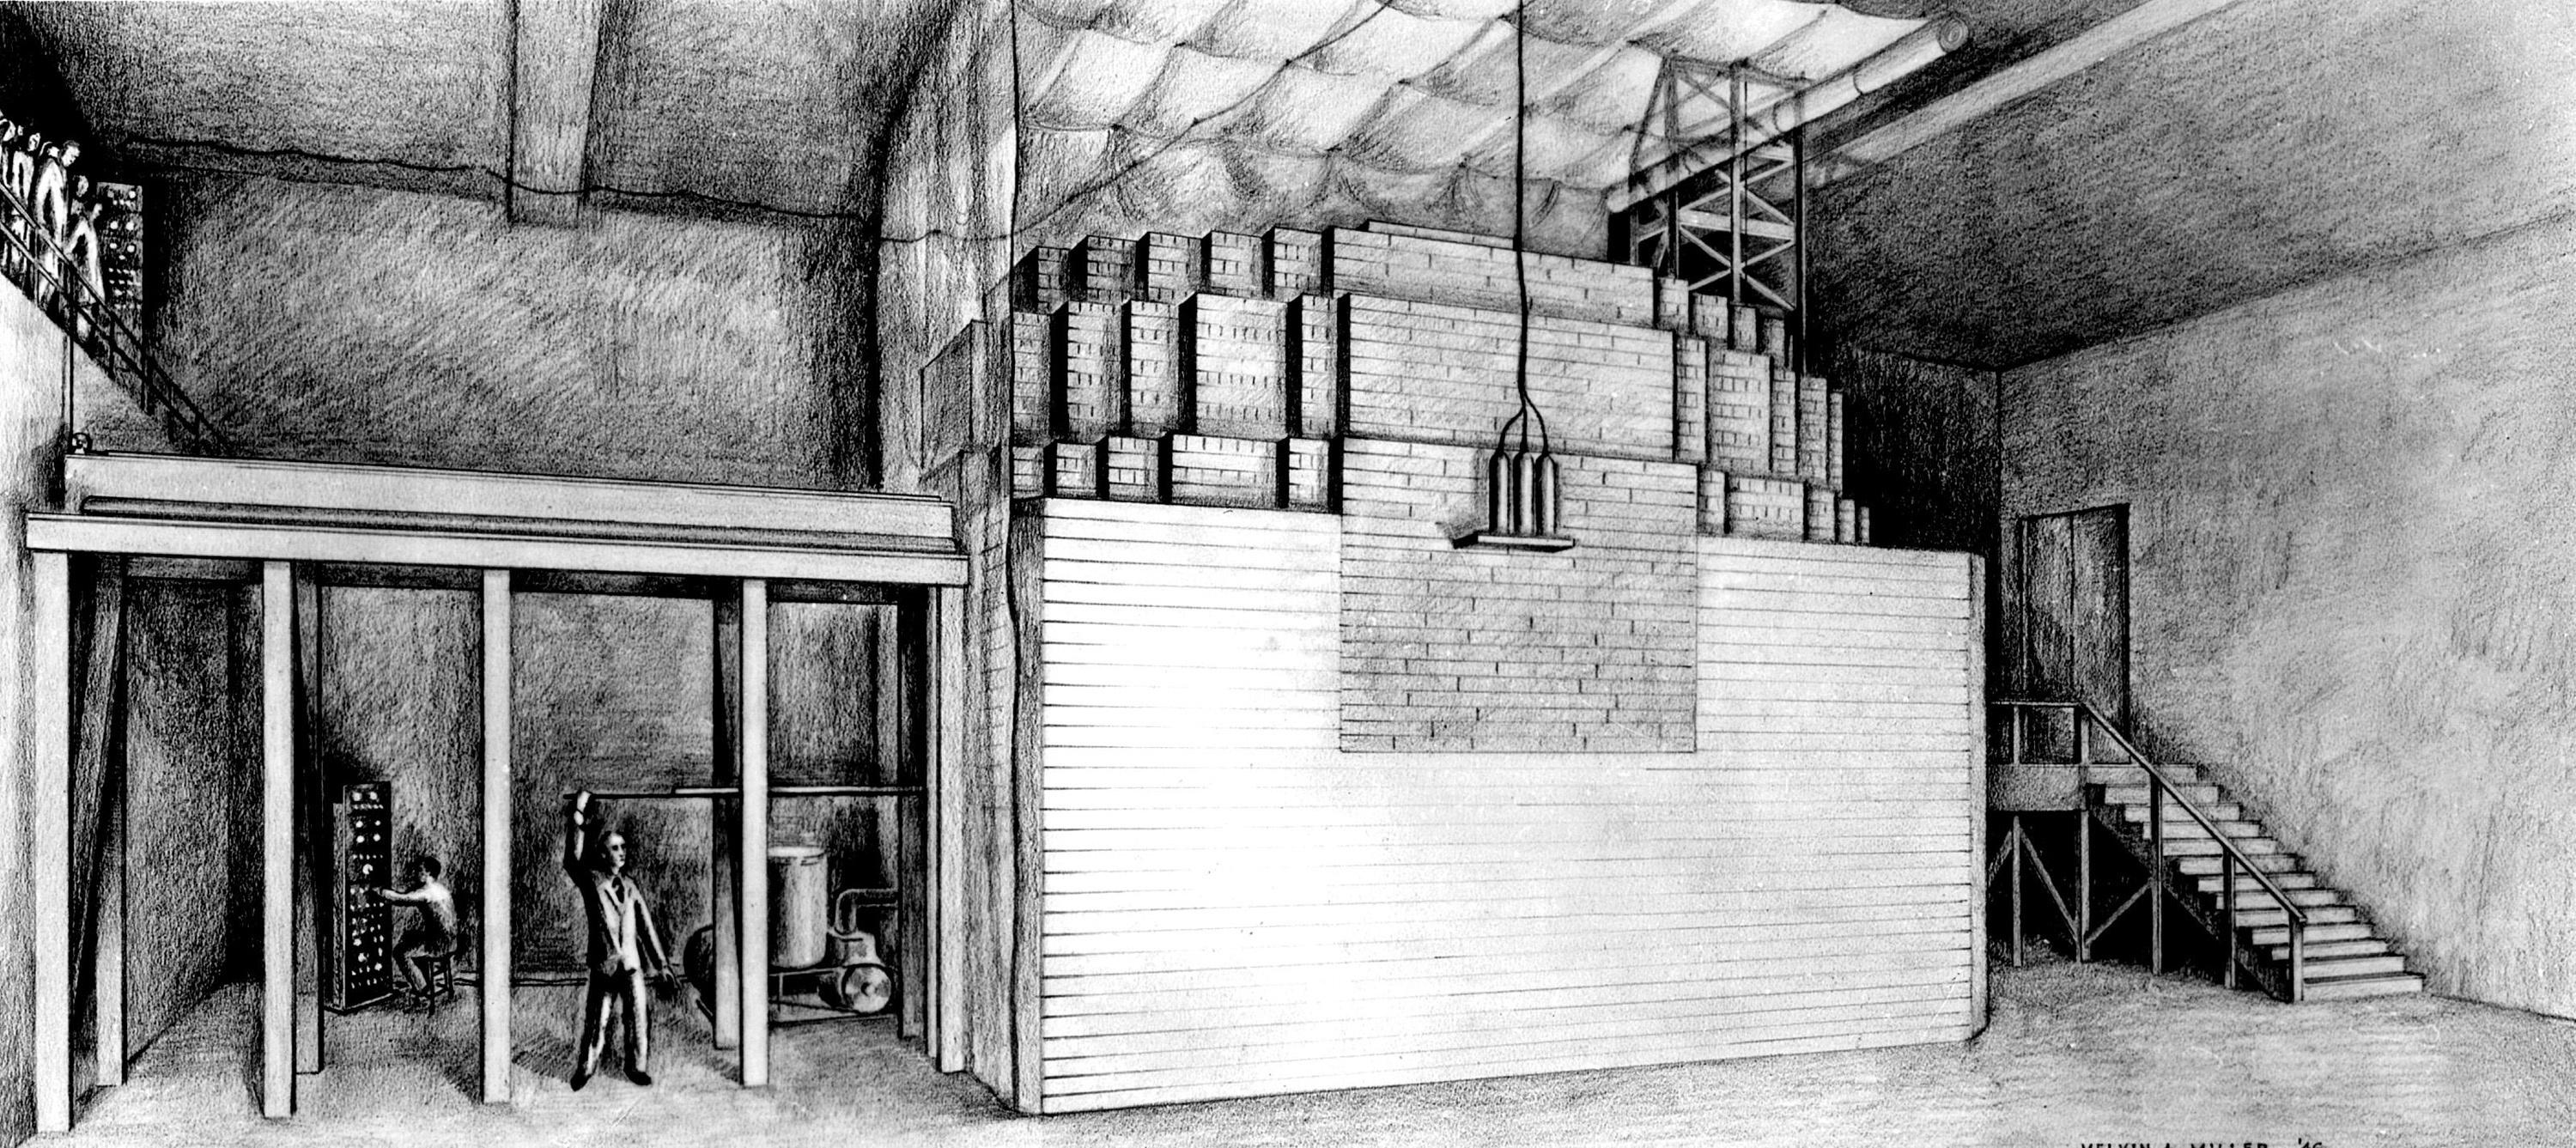 Chicago Pile-1 var verdens første menneskeskapte og fungerende kjernefysiske reaktor, og var satt sammen av løse mursteiner og trebjelker. Den ble bygd i 1942 som en del av Manhattan-prosjektet, og lå rett under tribunen til et fotballstadion i Chicago….